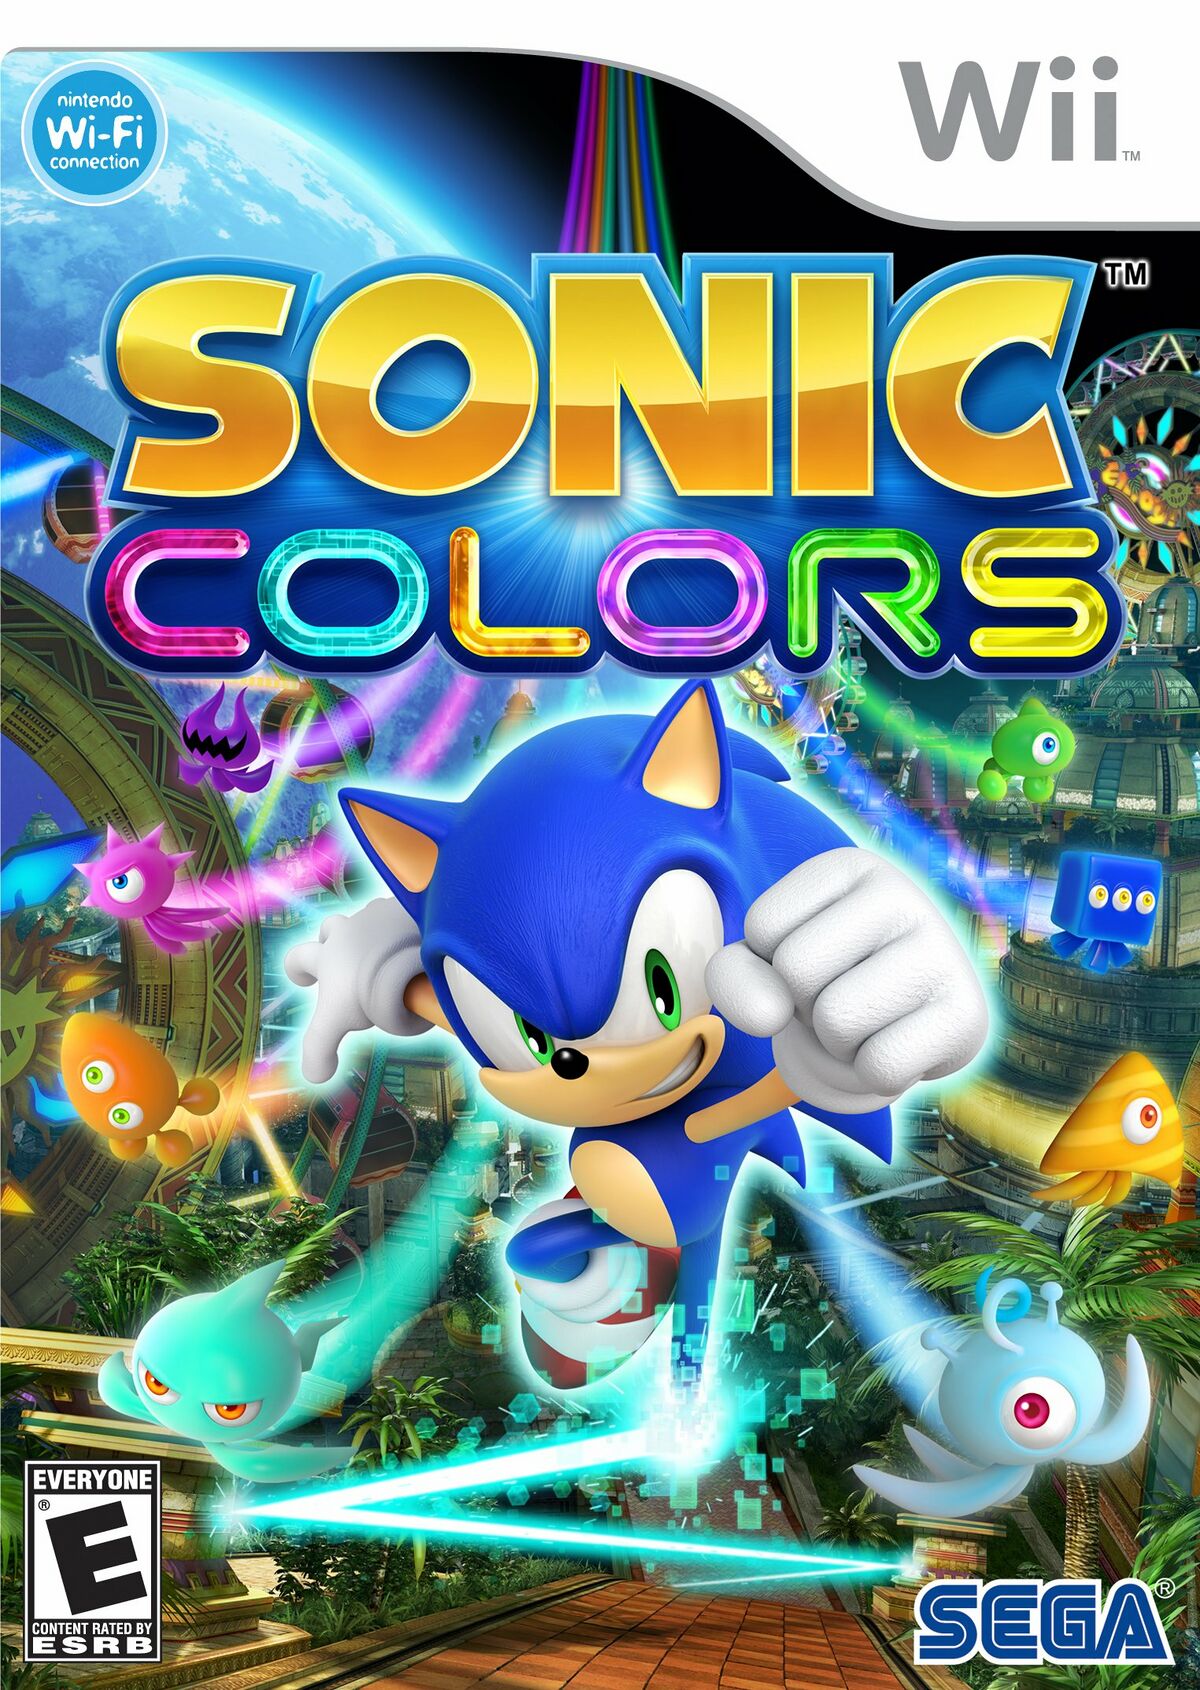 Sonic the Hedgehog 4 Episode I Original Soundtrack — álbum de SEGA